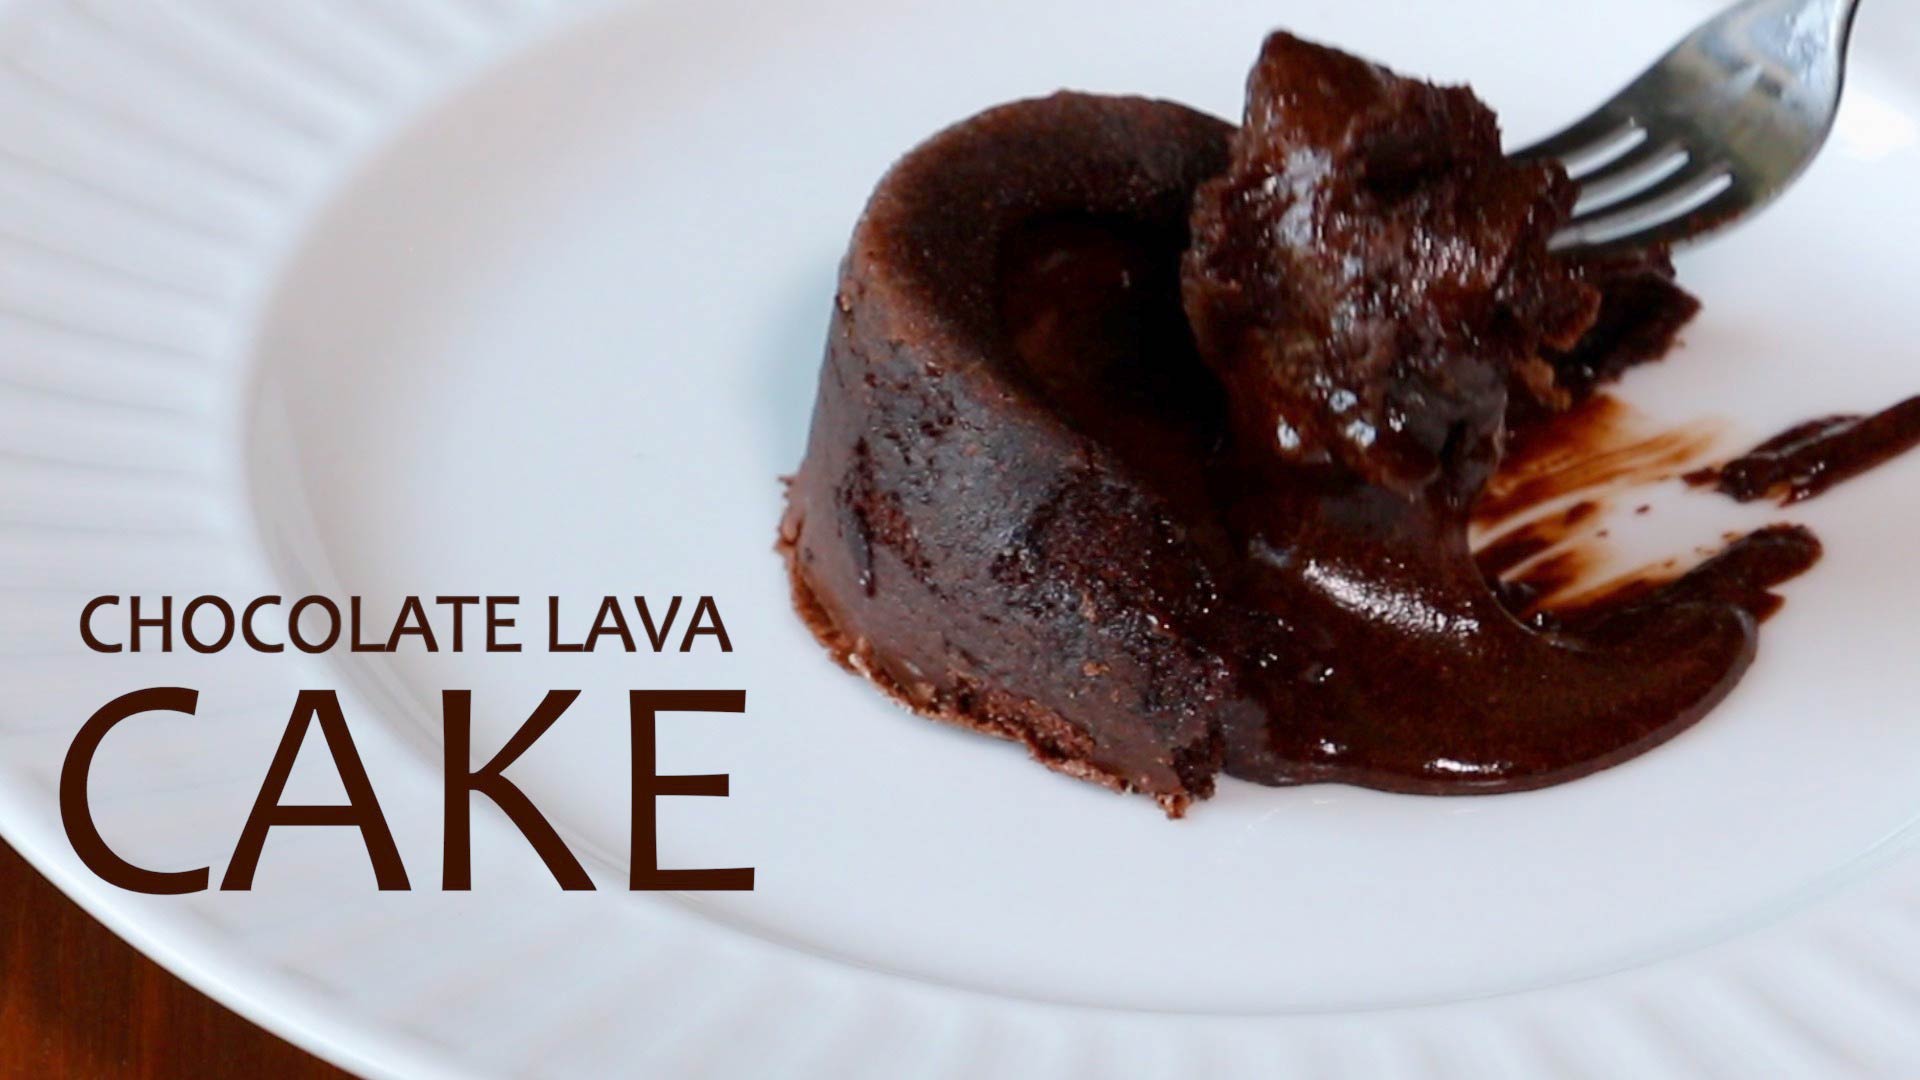 Choco Lava Cake recipe by Ritu Sharma at BetterButter